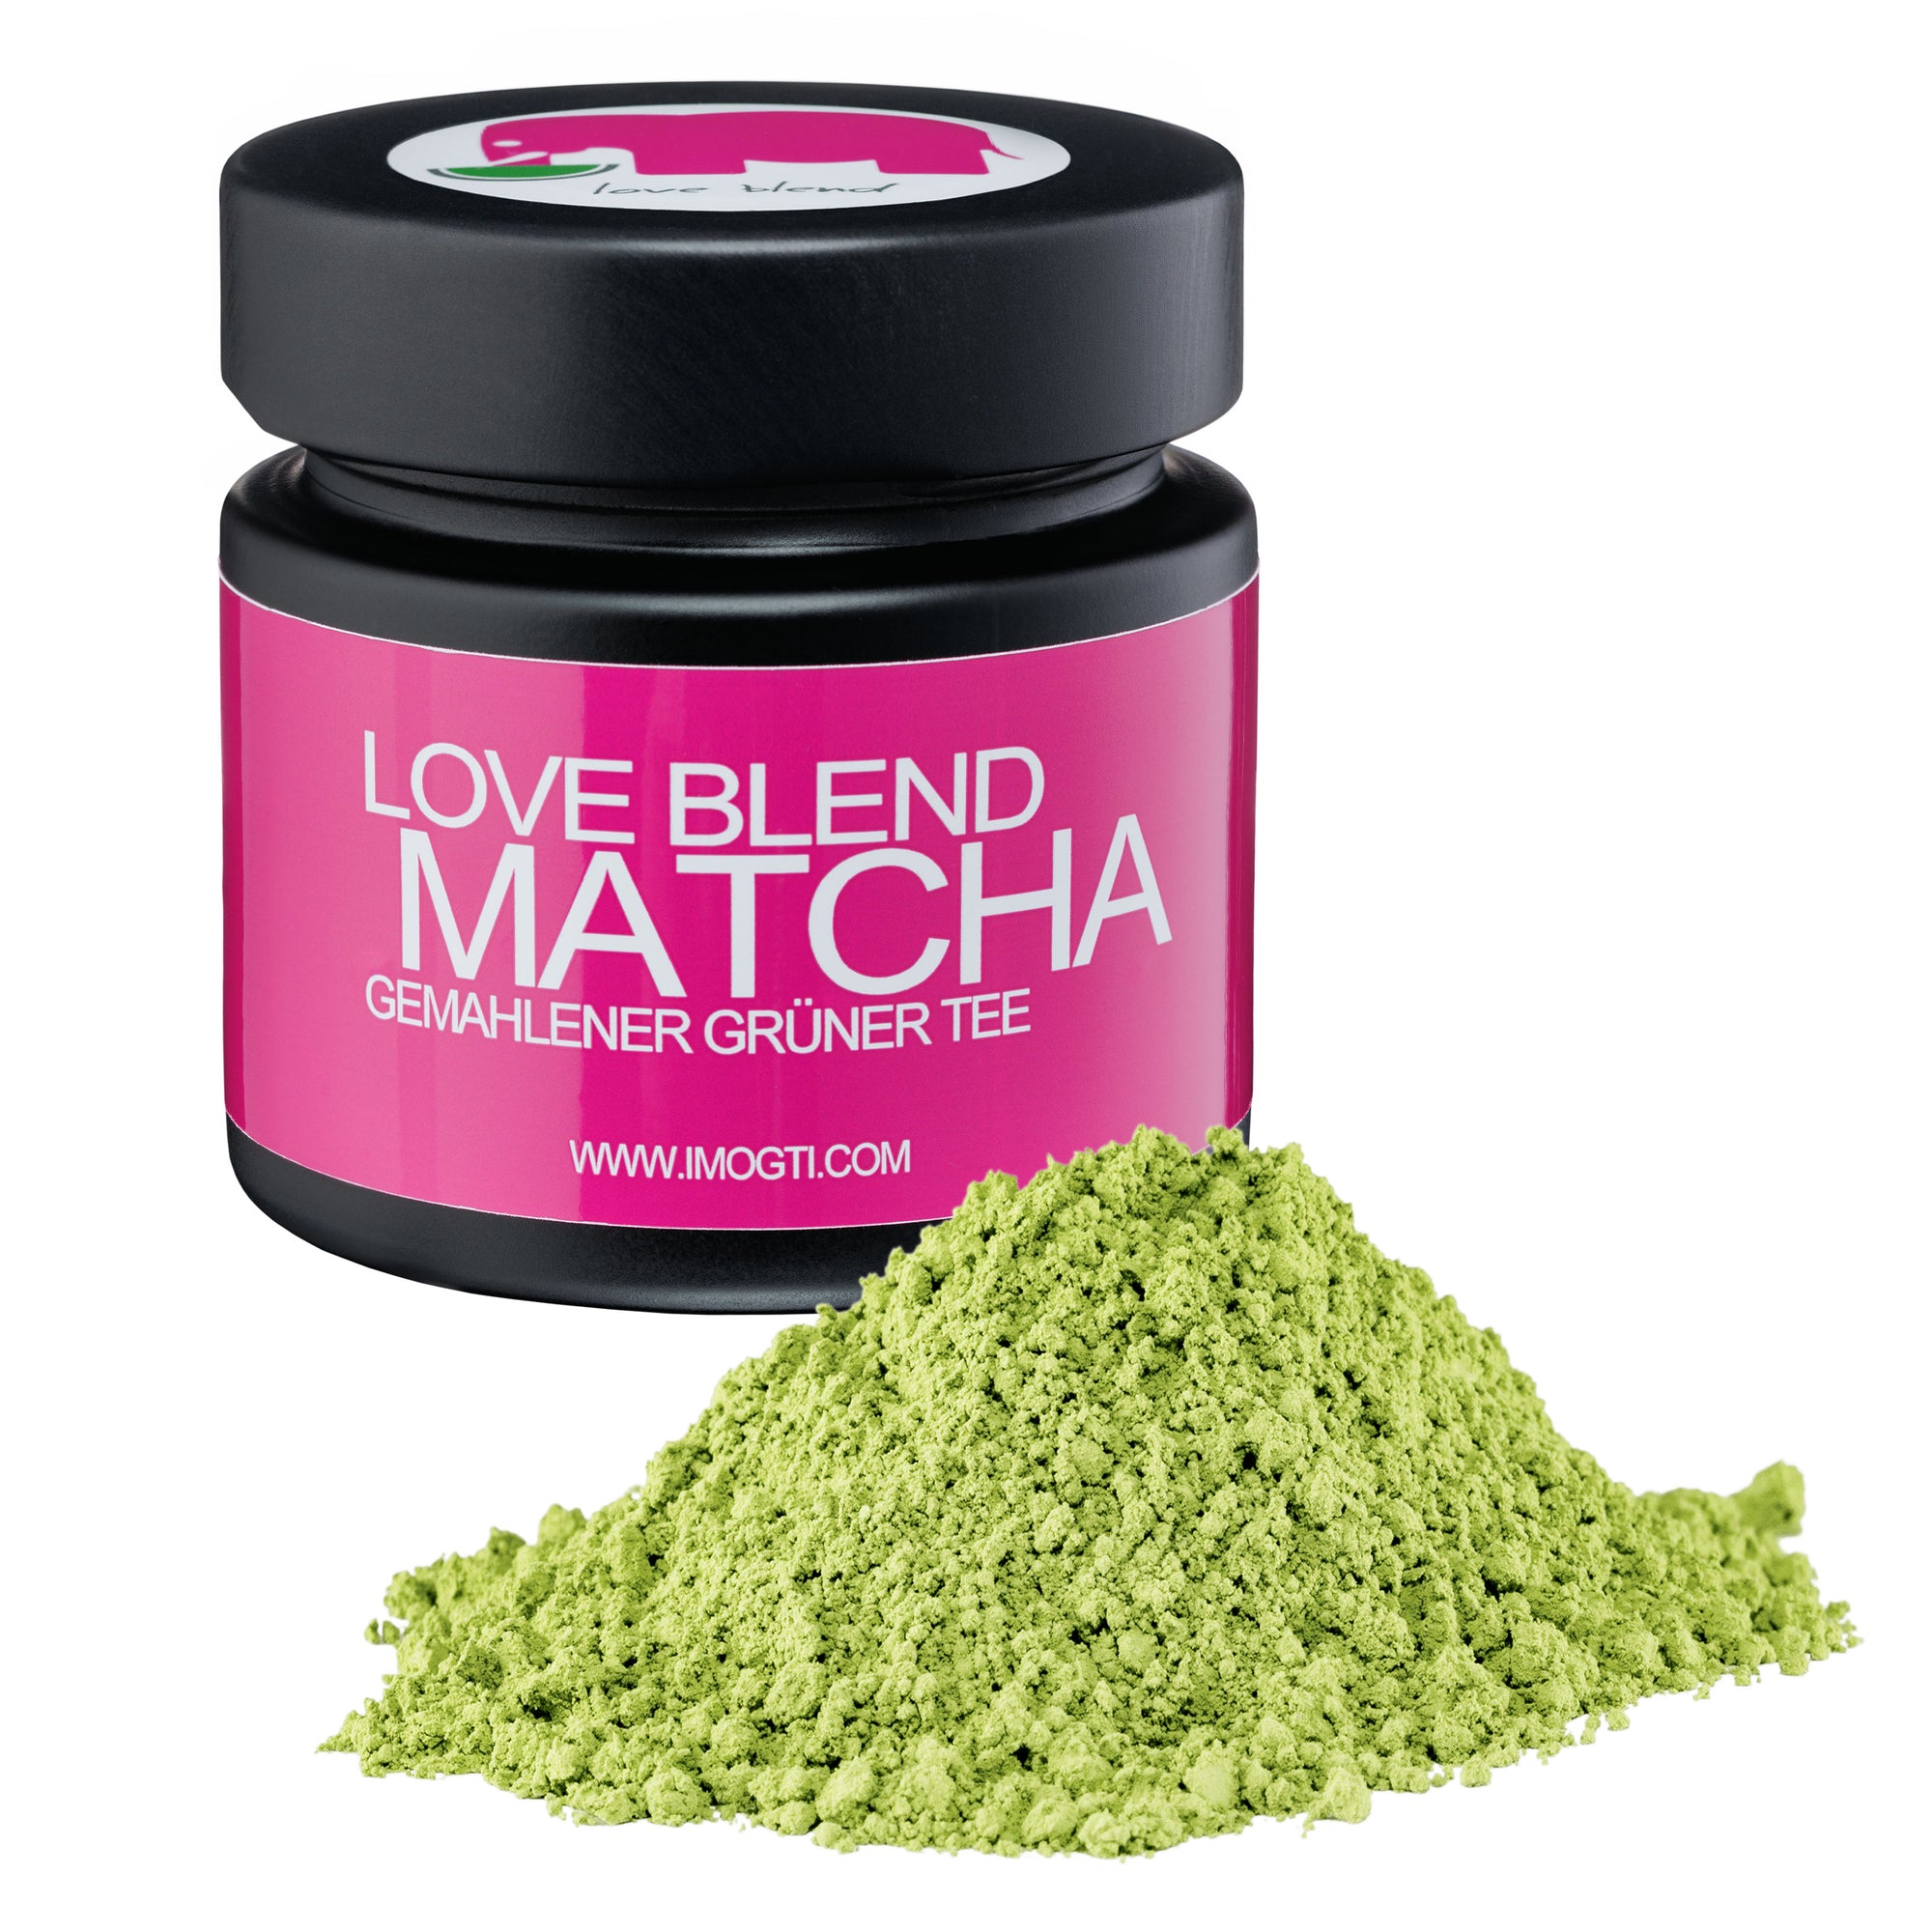 Original Love Blend Matcha